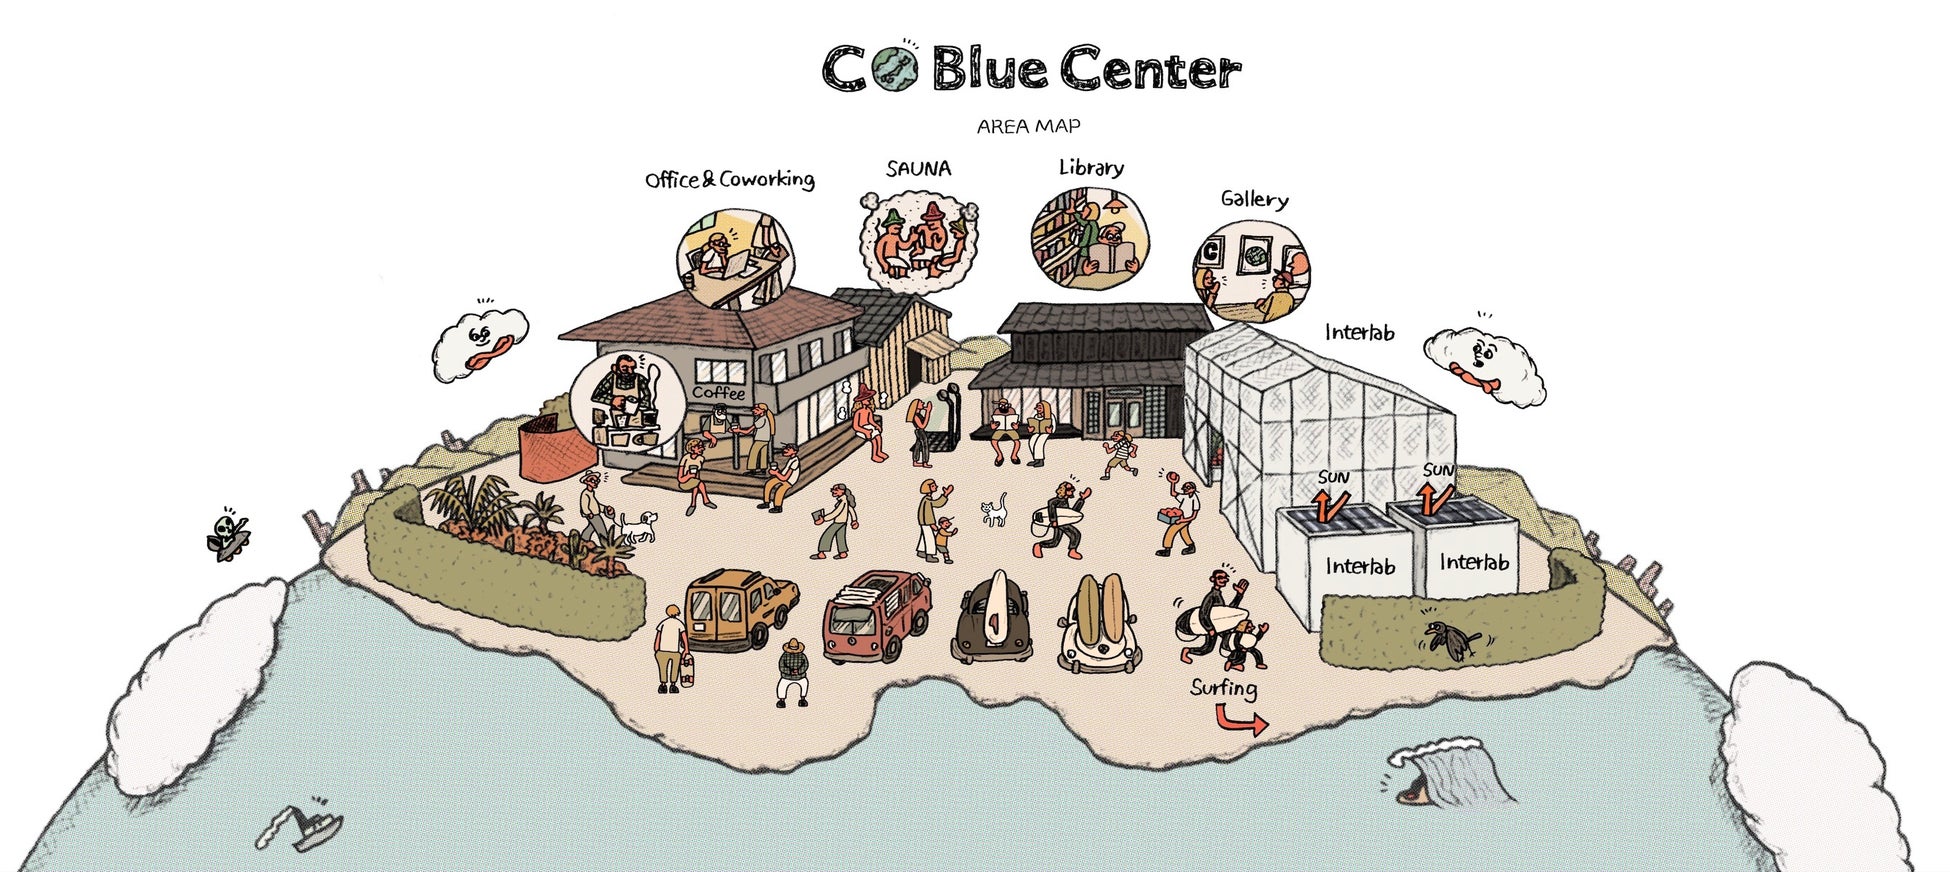 海洋プラを地域通貨にアップサイクル！伊勢志摩・国府の浜で始まるビーチクリーン✖️地域経済循環プロジェクトのサブ画像2_複数のオフィス・コワーキングスペース・コーヒースタンド・サウナ・図書室などが複合する「安らぎながら働く場所」